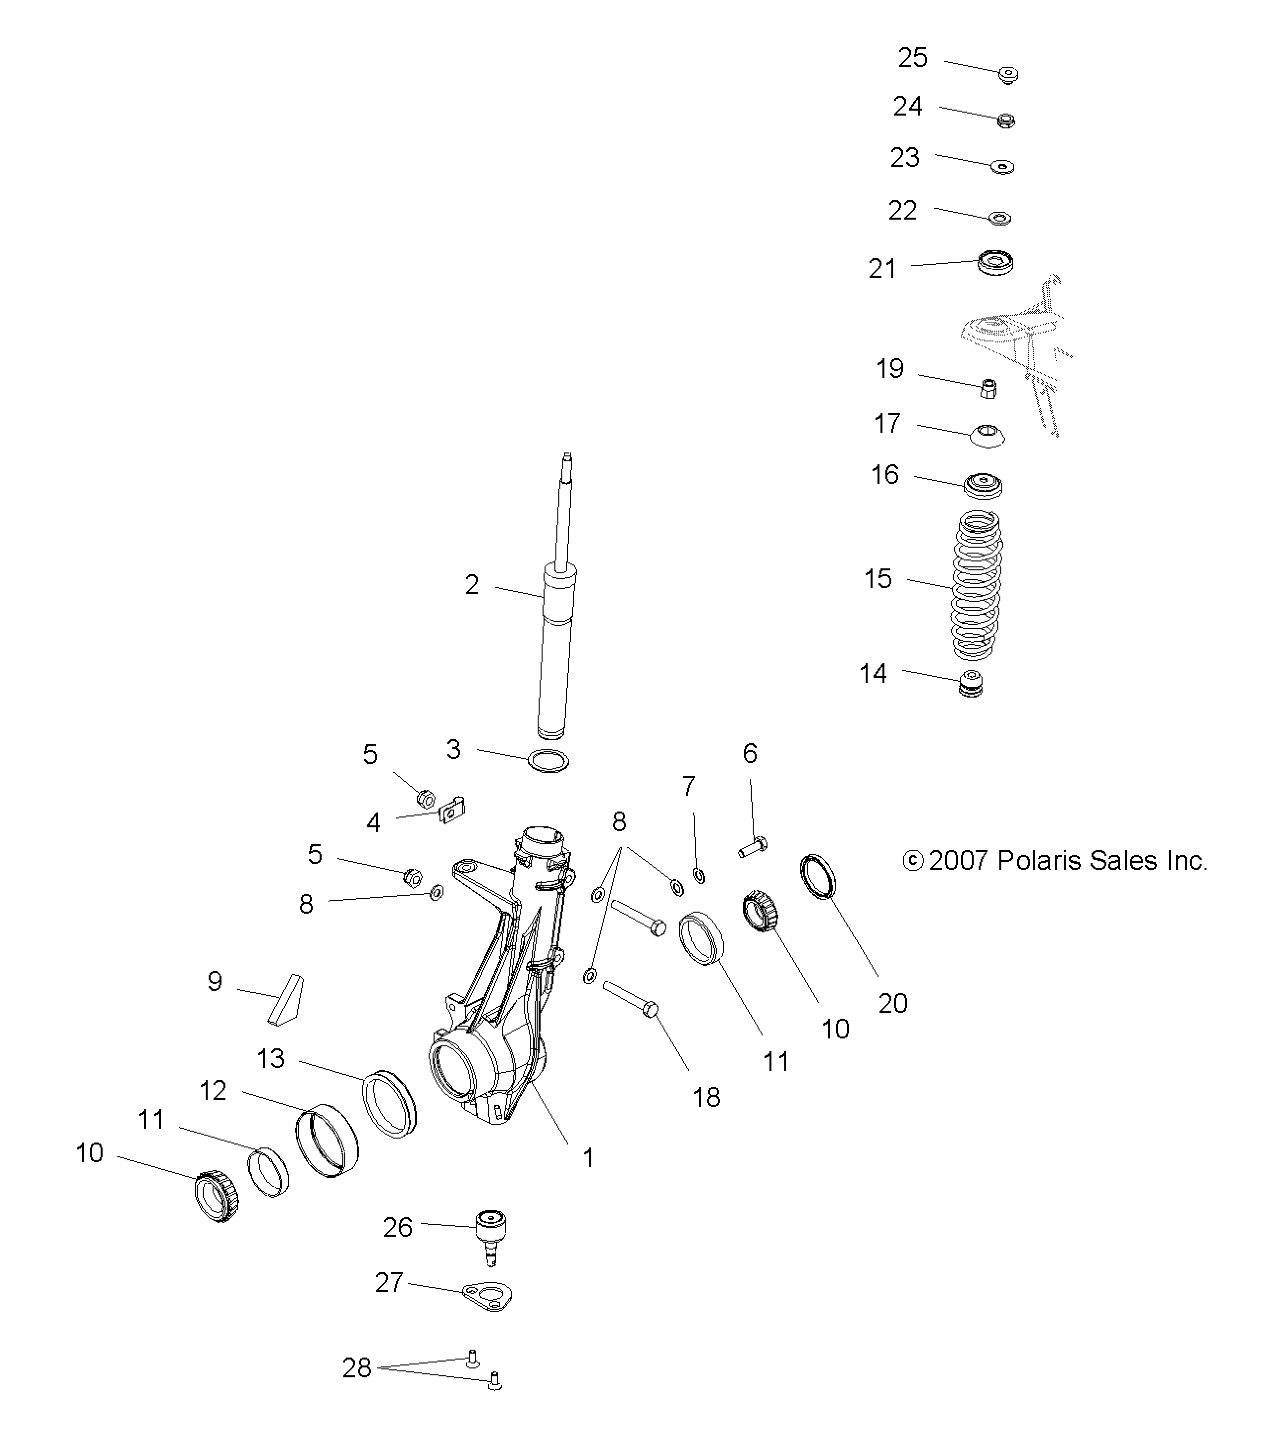 Foto diagrama Polaris que contem a peça 3554509